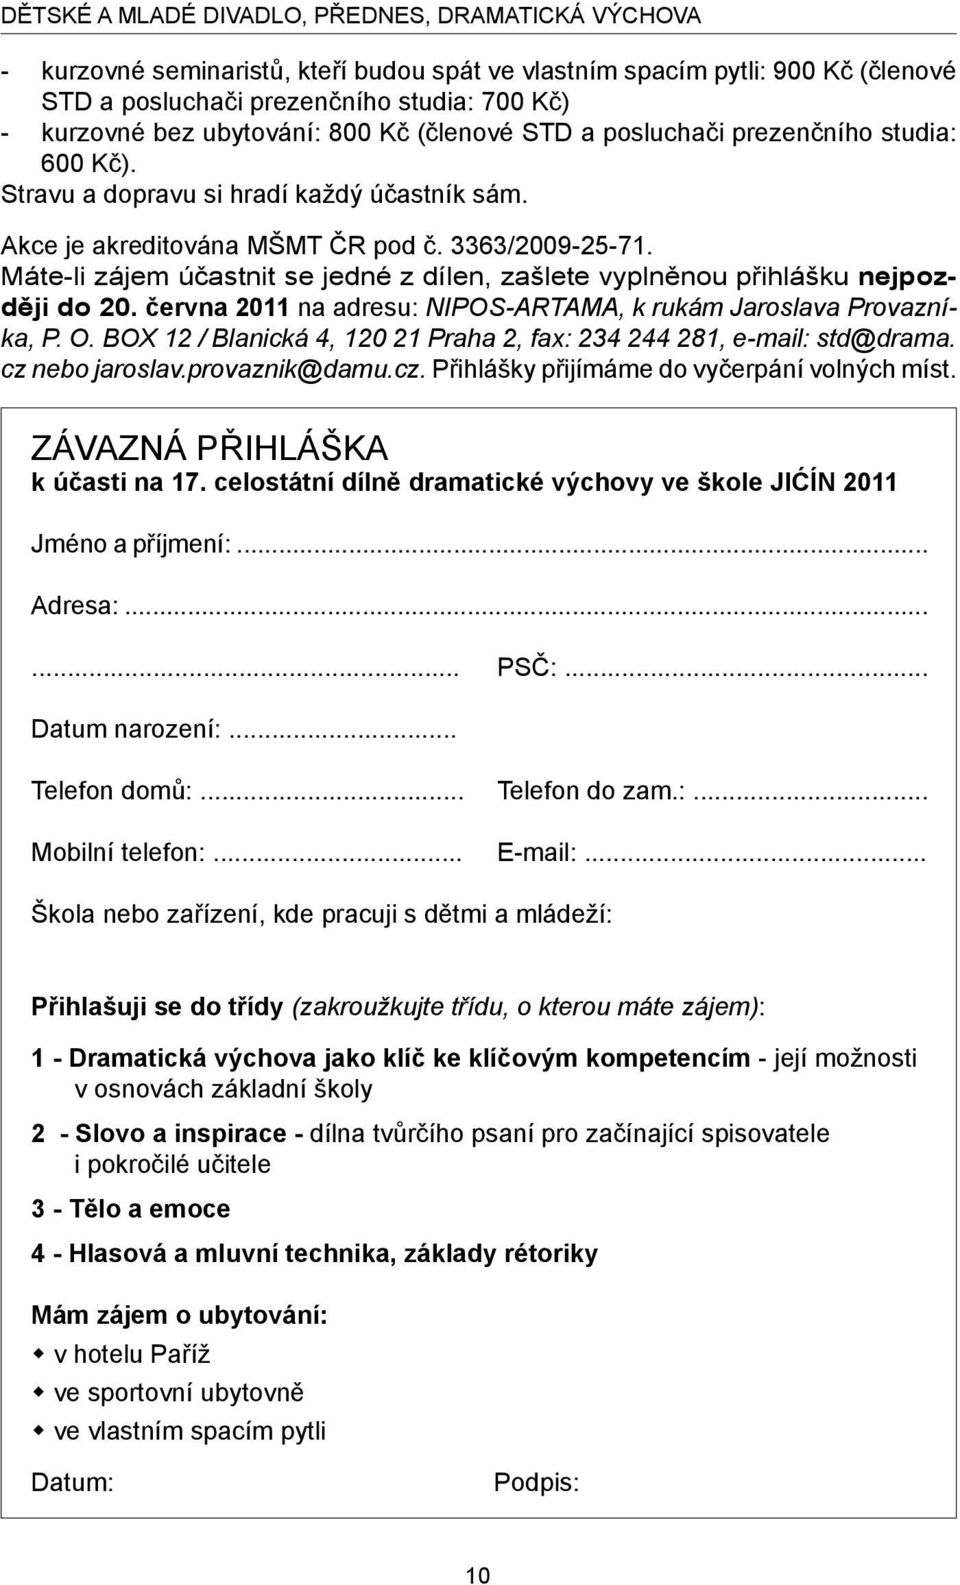 Máte-li zájem účastnit se jedné z dílen, zašlete vyplněnou přihlášku nejpozději do 20. června 2011 na adresu: NIPOS-ARTAMA, k rukám Jaroslava Provazníka, P. O.